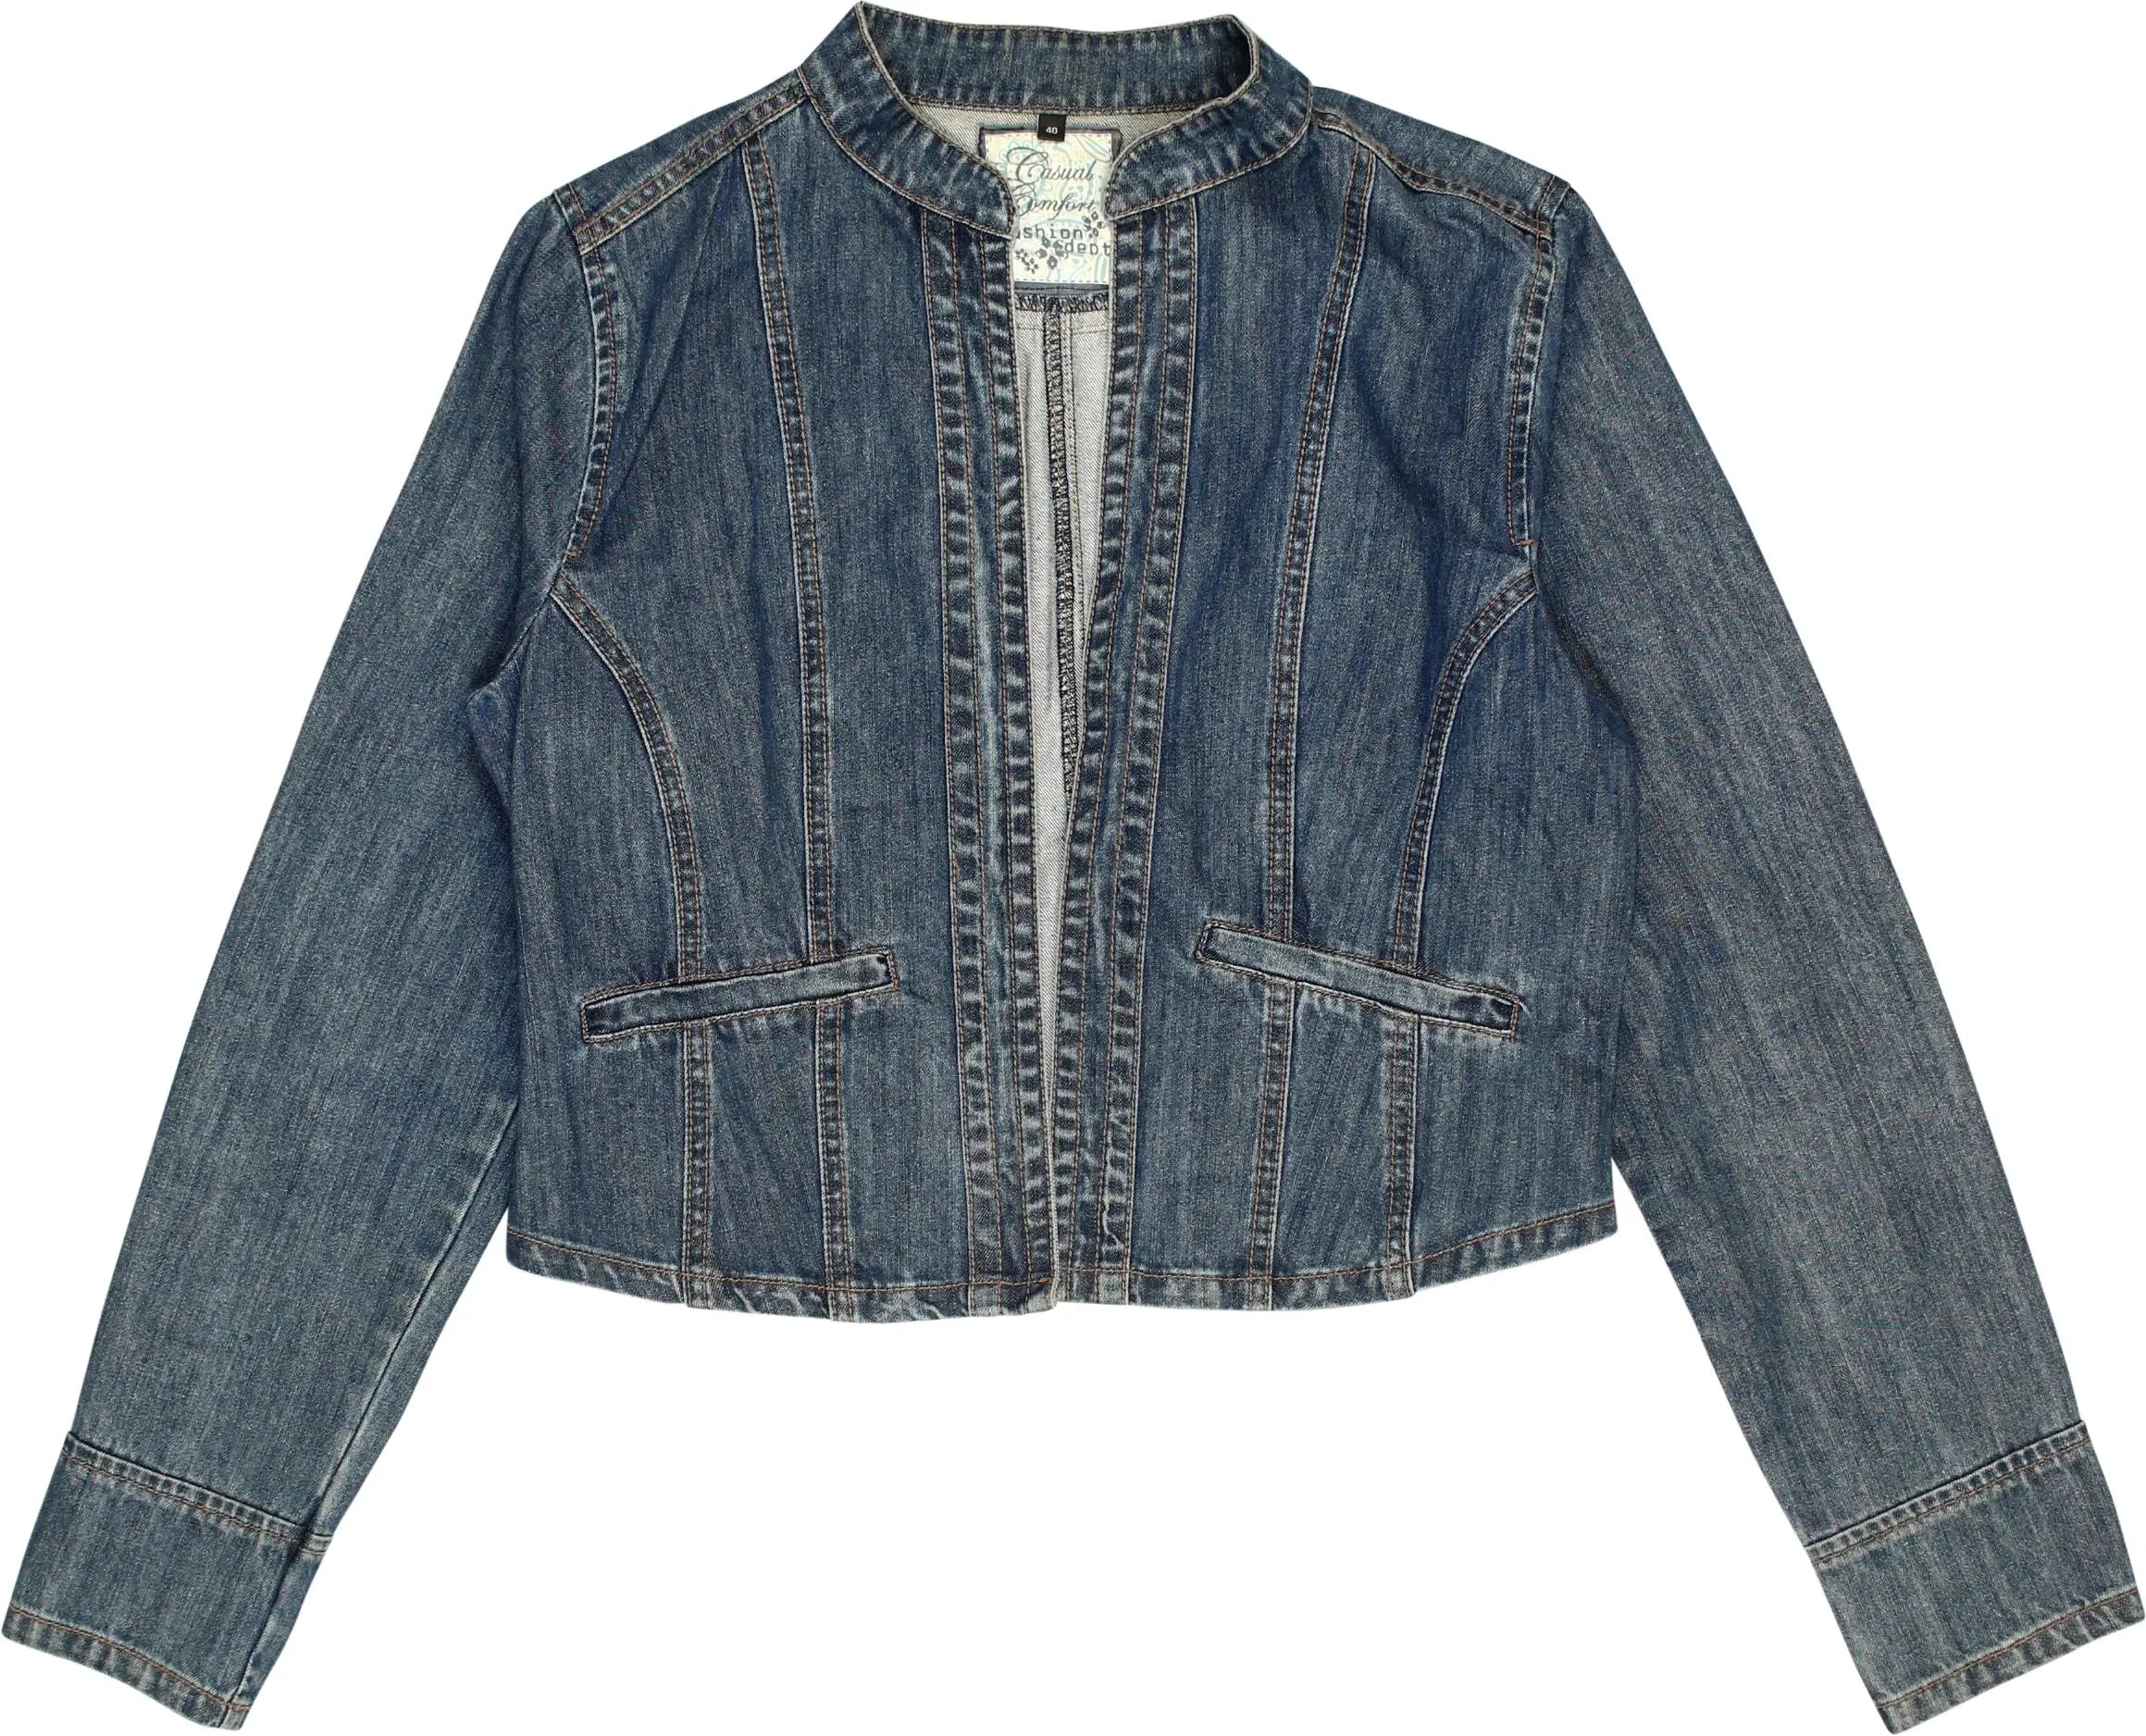 Dept - Denim Jacket- ThriftTale.com - Vintage and second handclothing